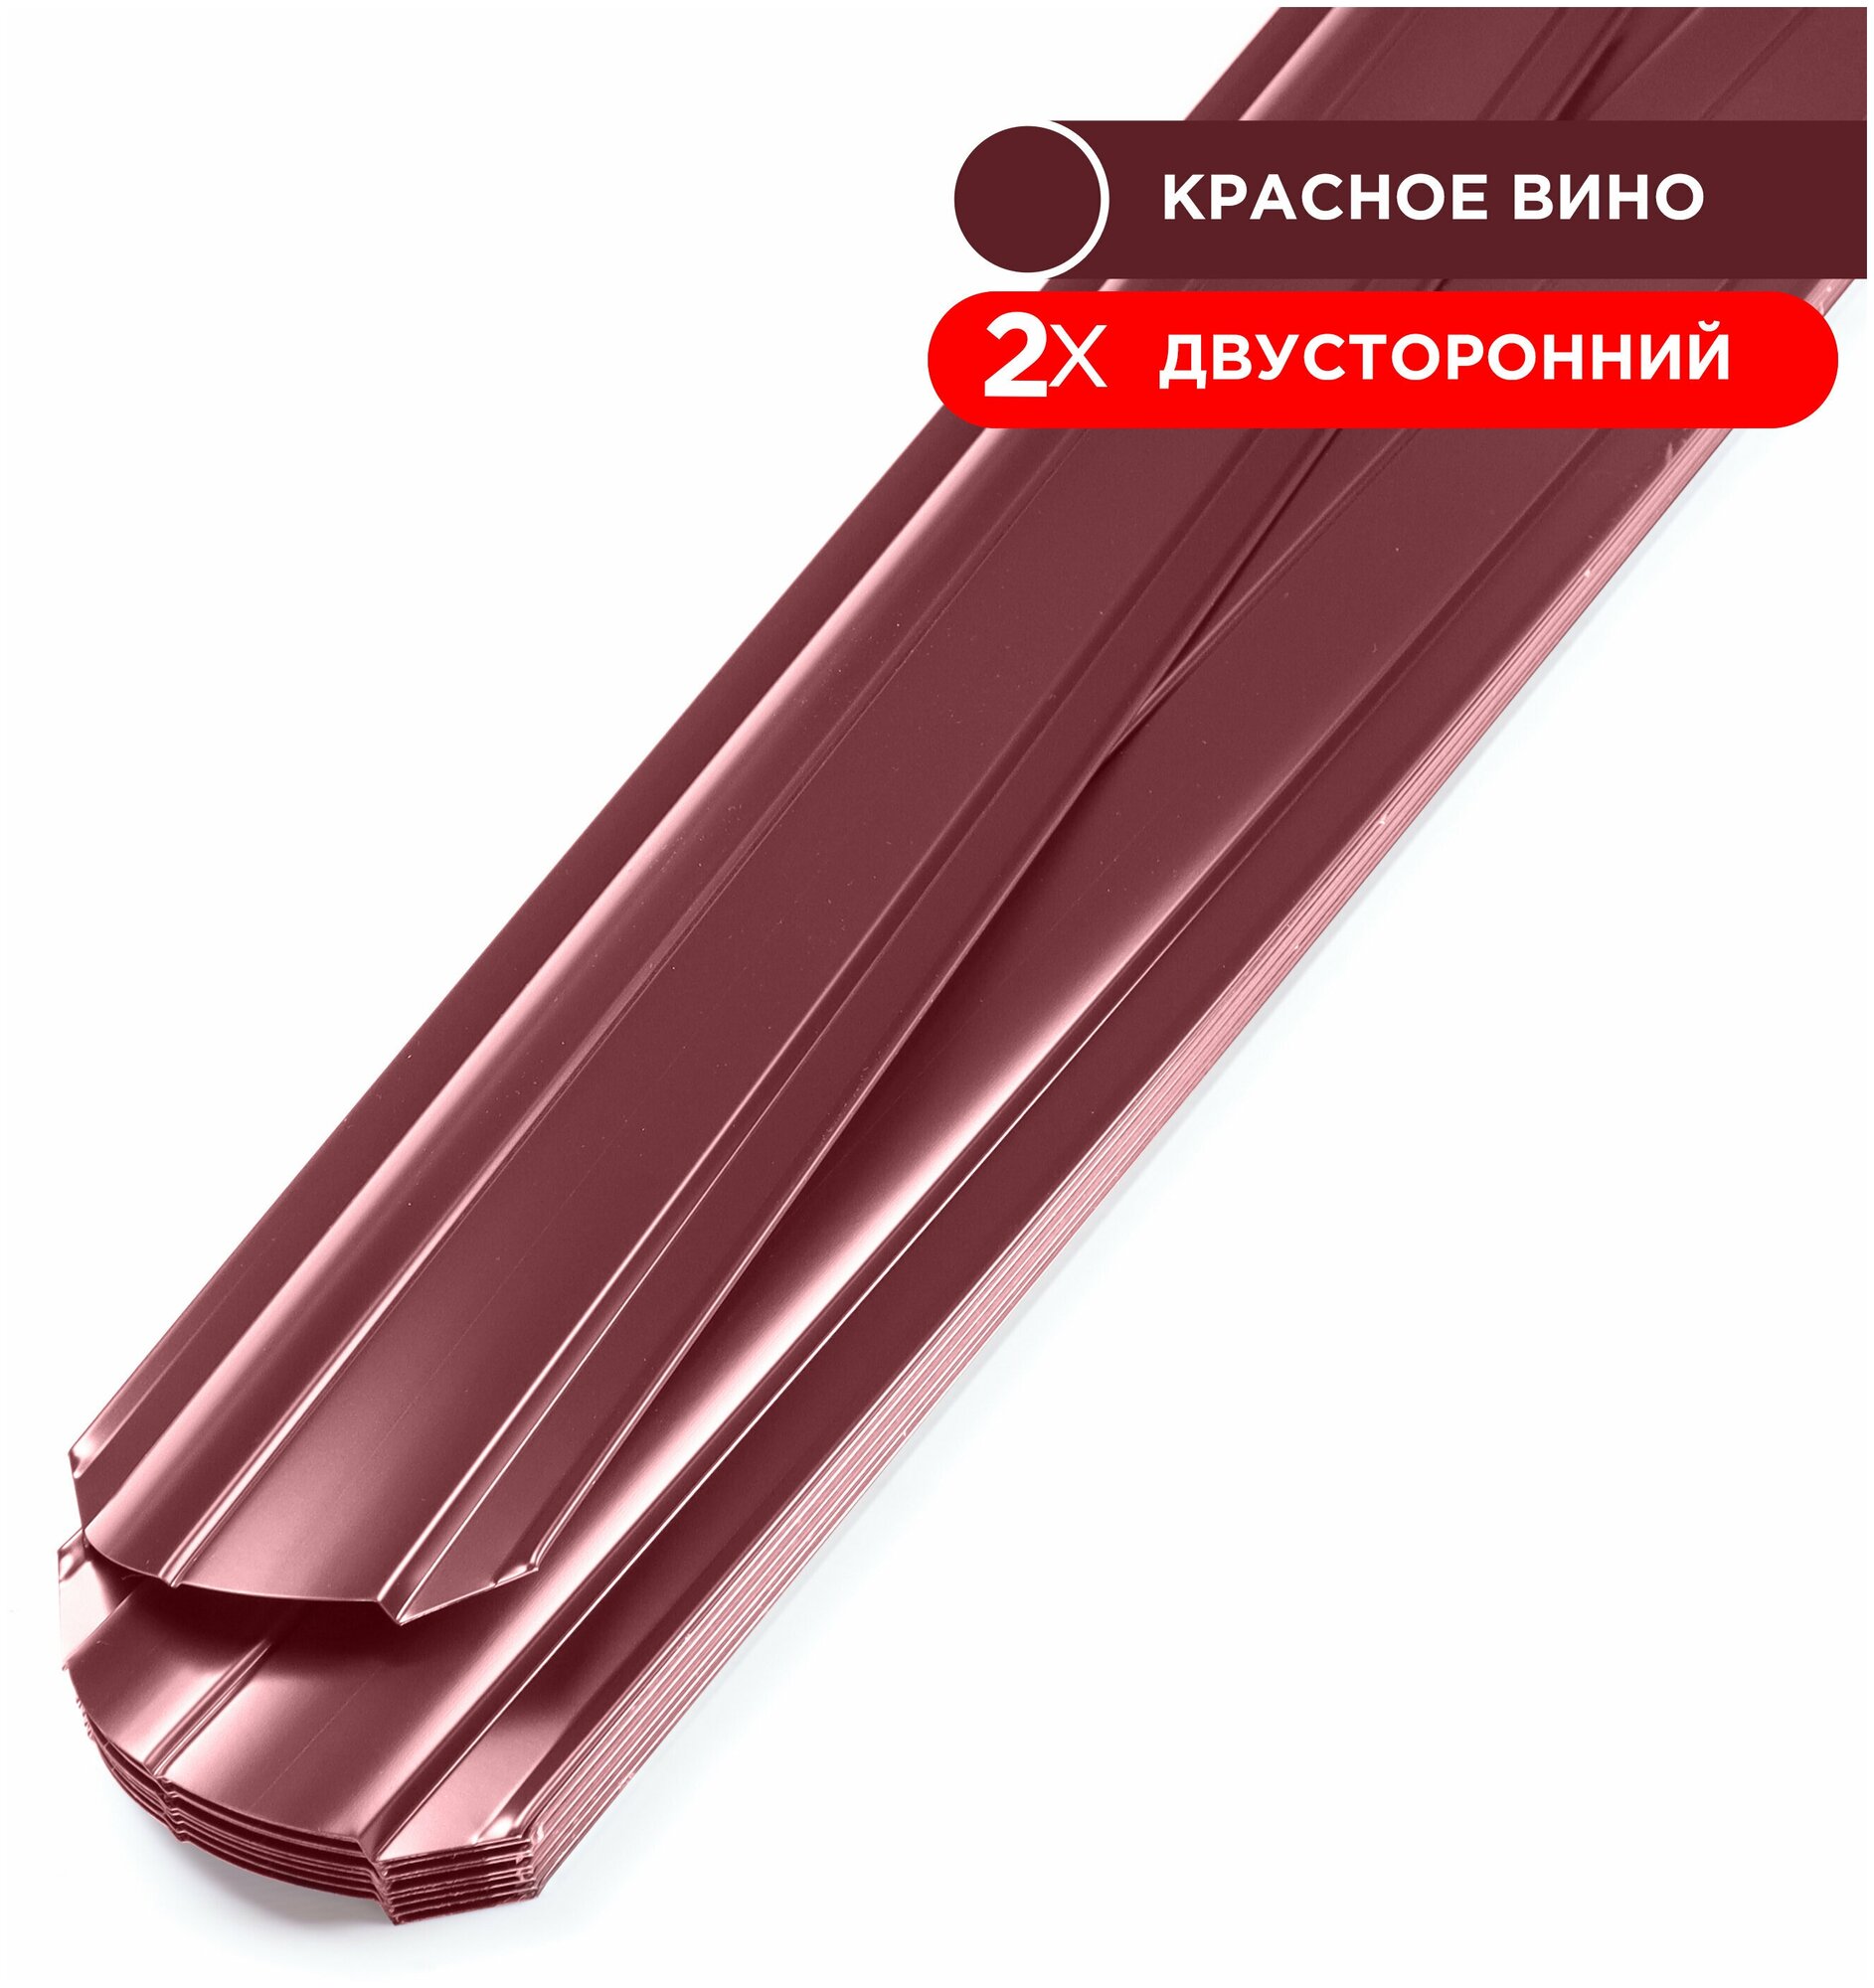 Евроштакетник Line металлический/ заборы/ 0.45 толщина, цвет 3005/ 3005 (Спелая вишня) 10 шт. 0.75 м - фотография № 2